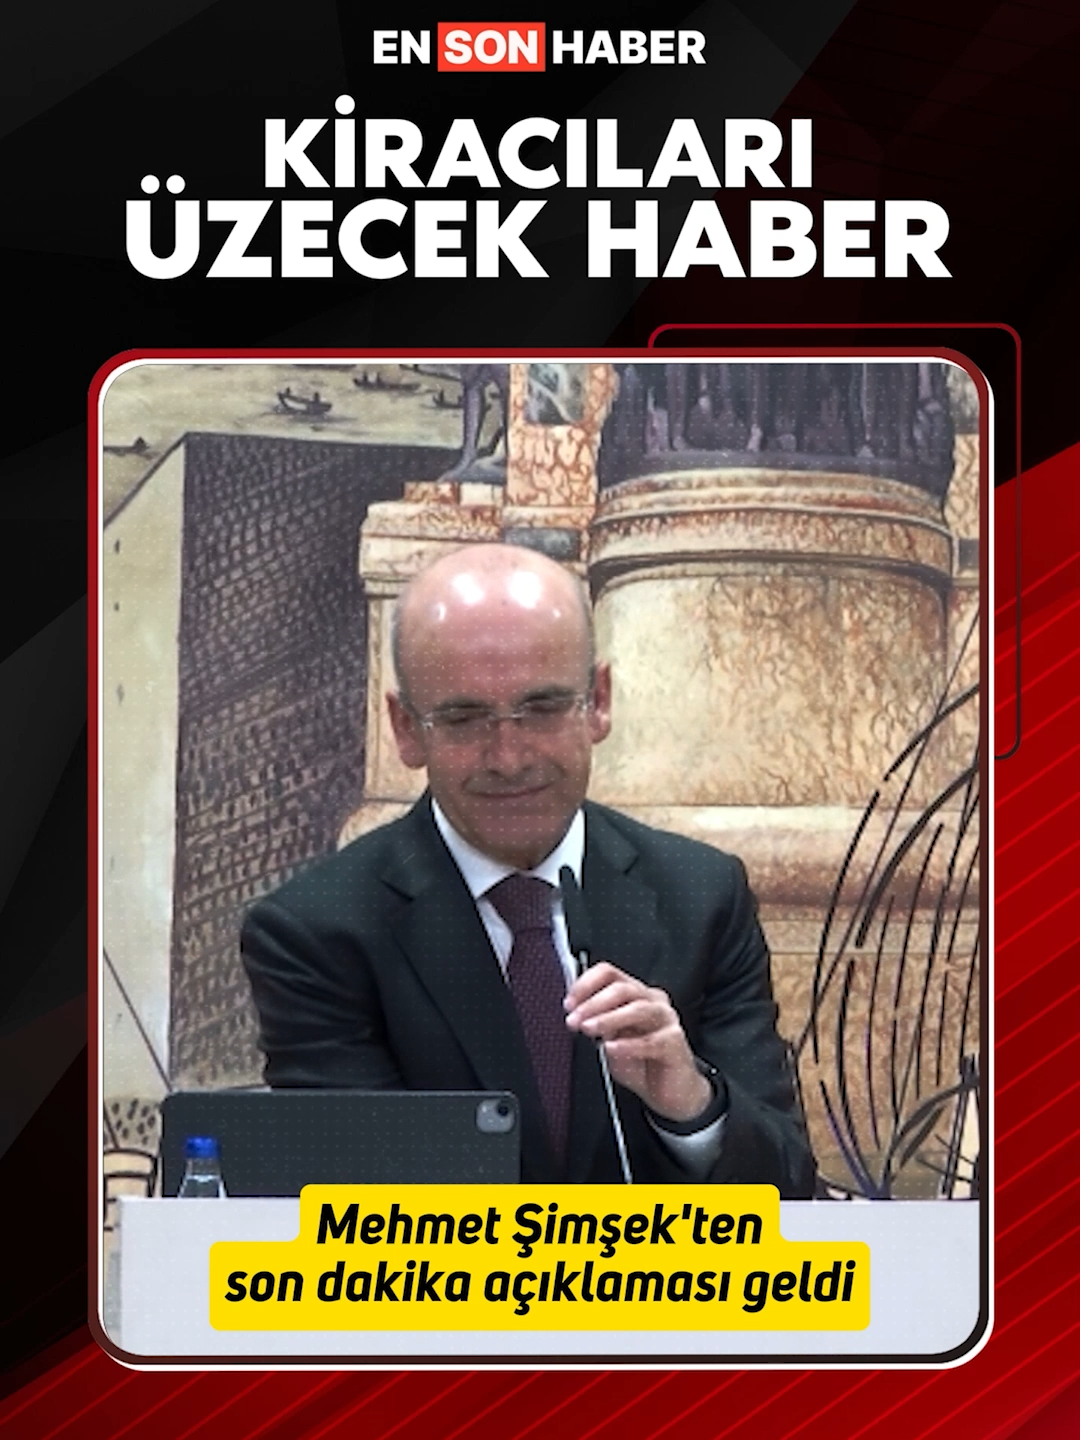 Hazine ve Maliye Bakanı Mehmet Şimşek'e, kira zamlarına getirilen yüzde 25 sınırı soruldu. #evsahibi #kiracı #zam #sınır #yüzde25 #mehmetşimşek